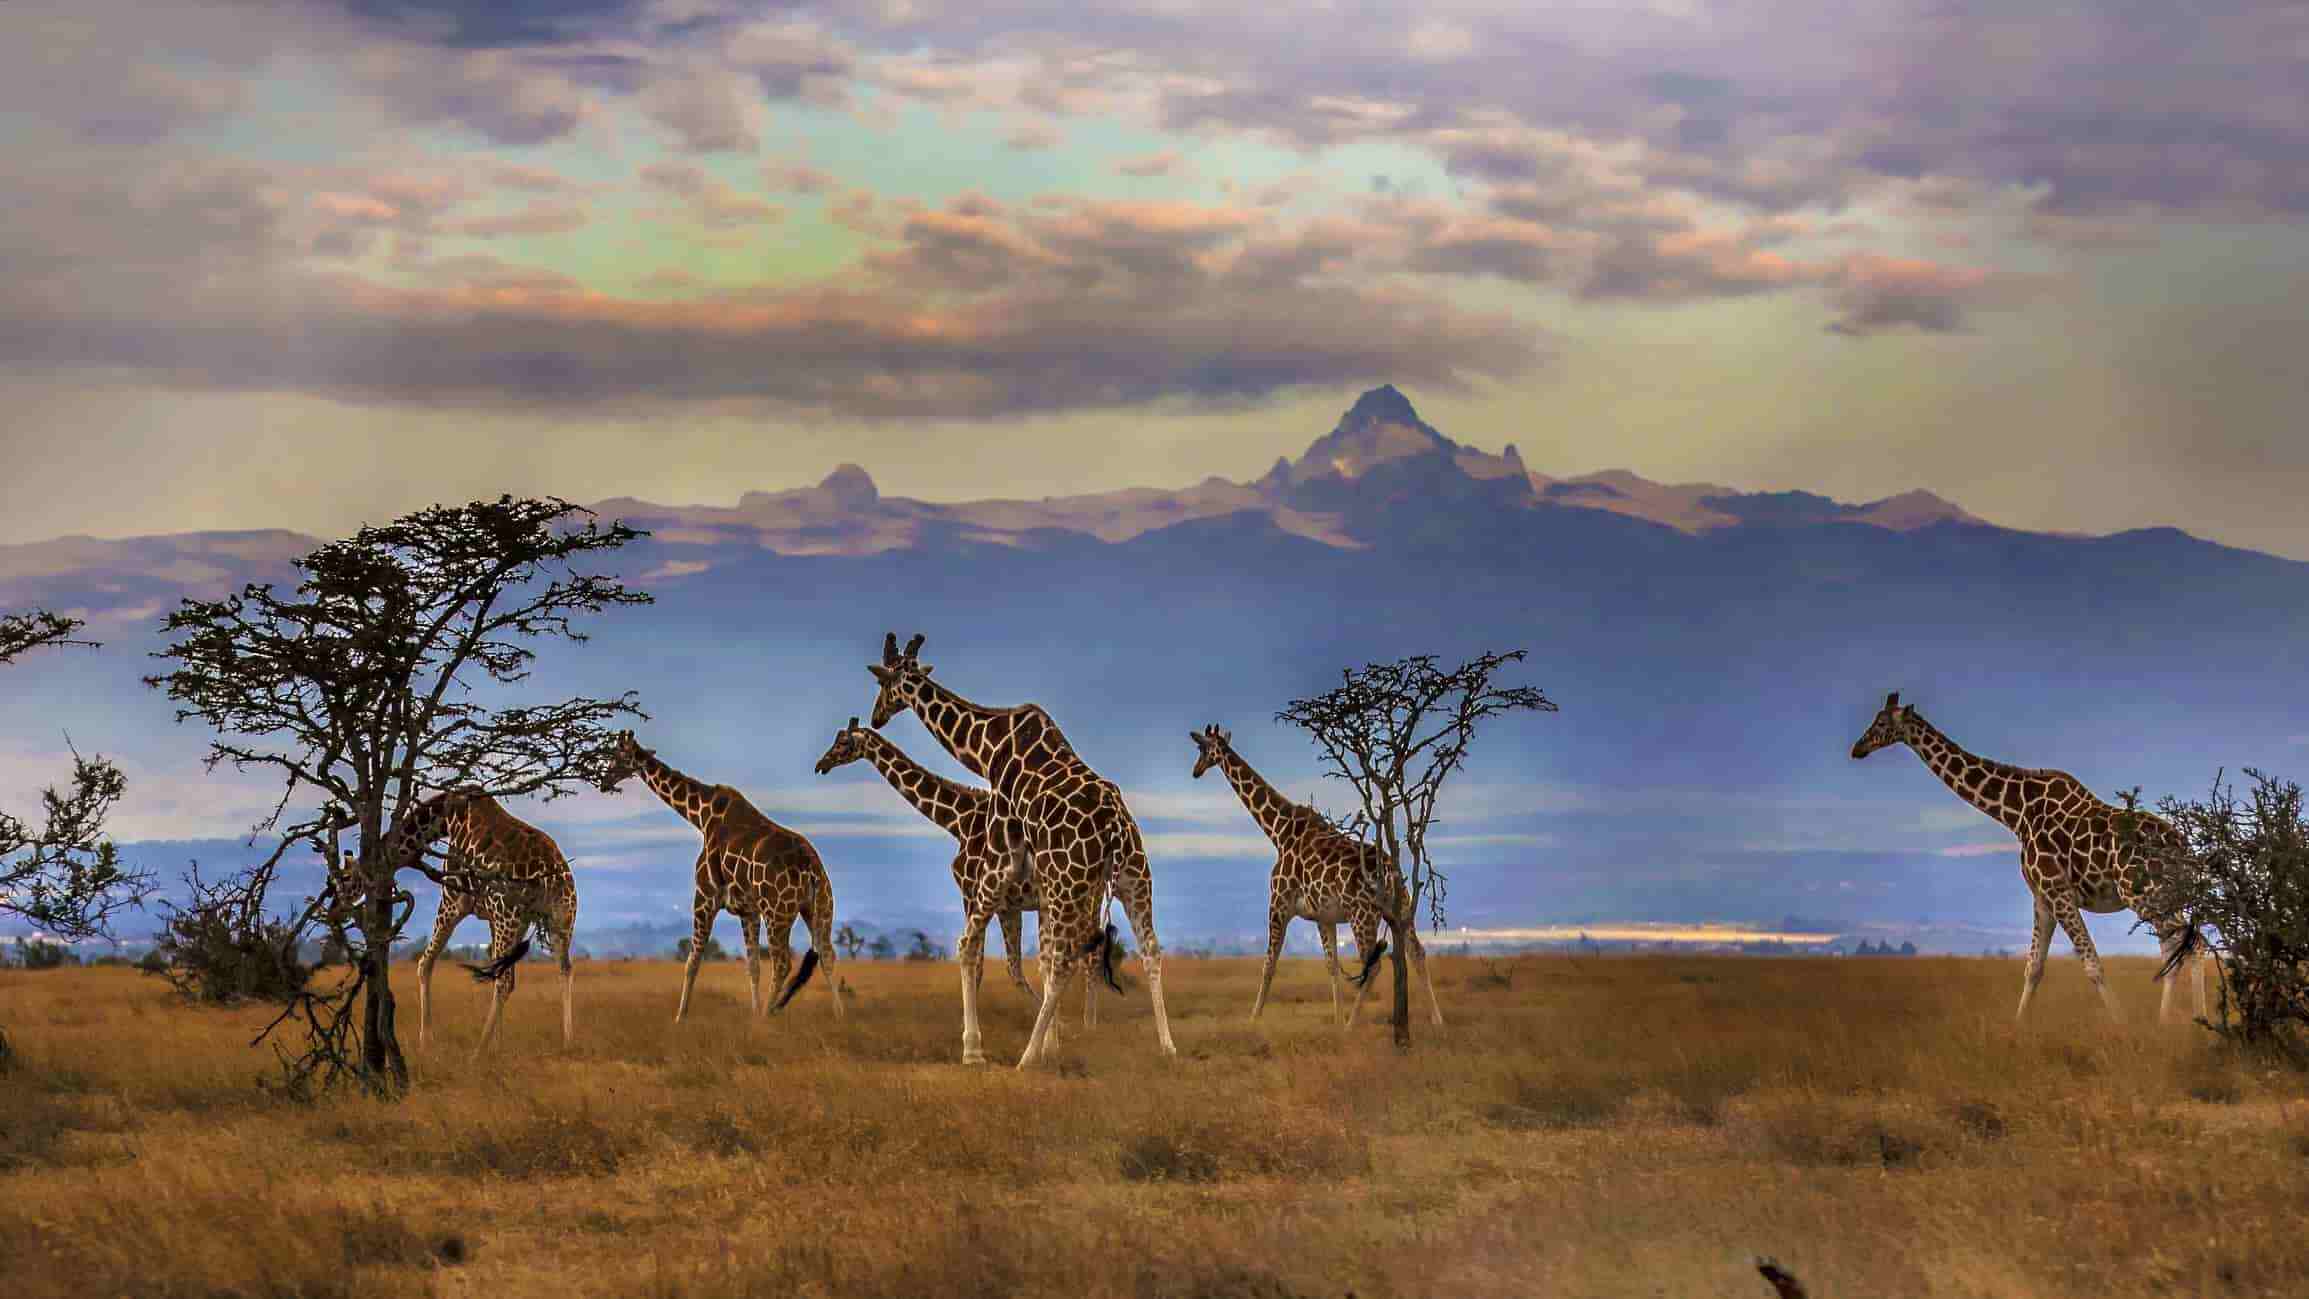 A herd of giraffes, including Northern giraffes, Reticulated giraffes, West African giraffes, and Nubian giraffes, standing in a field.